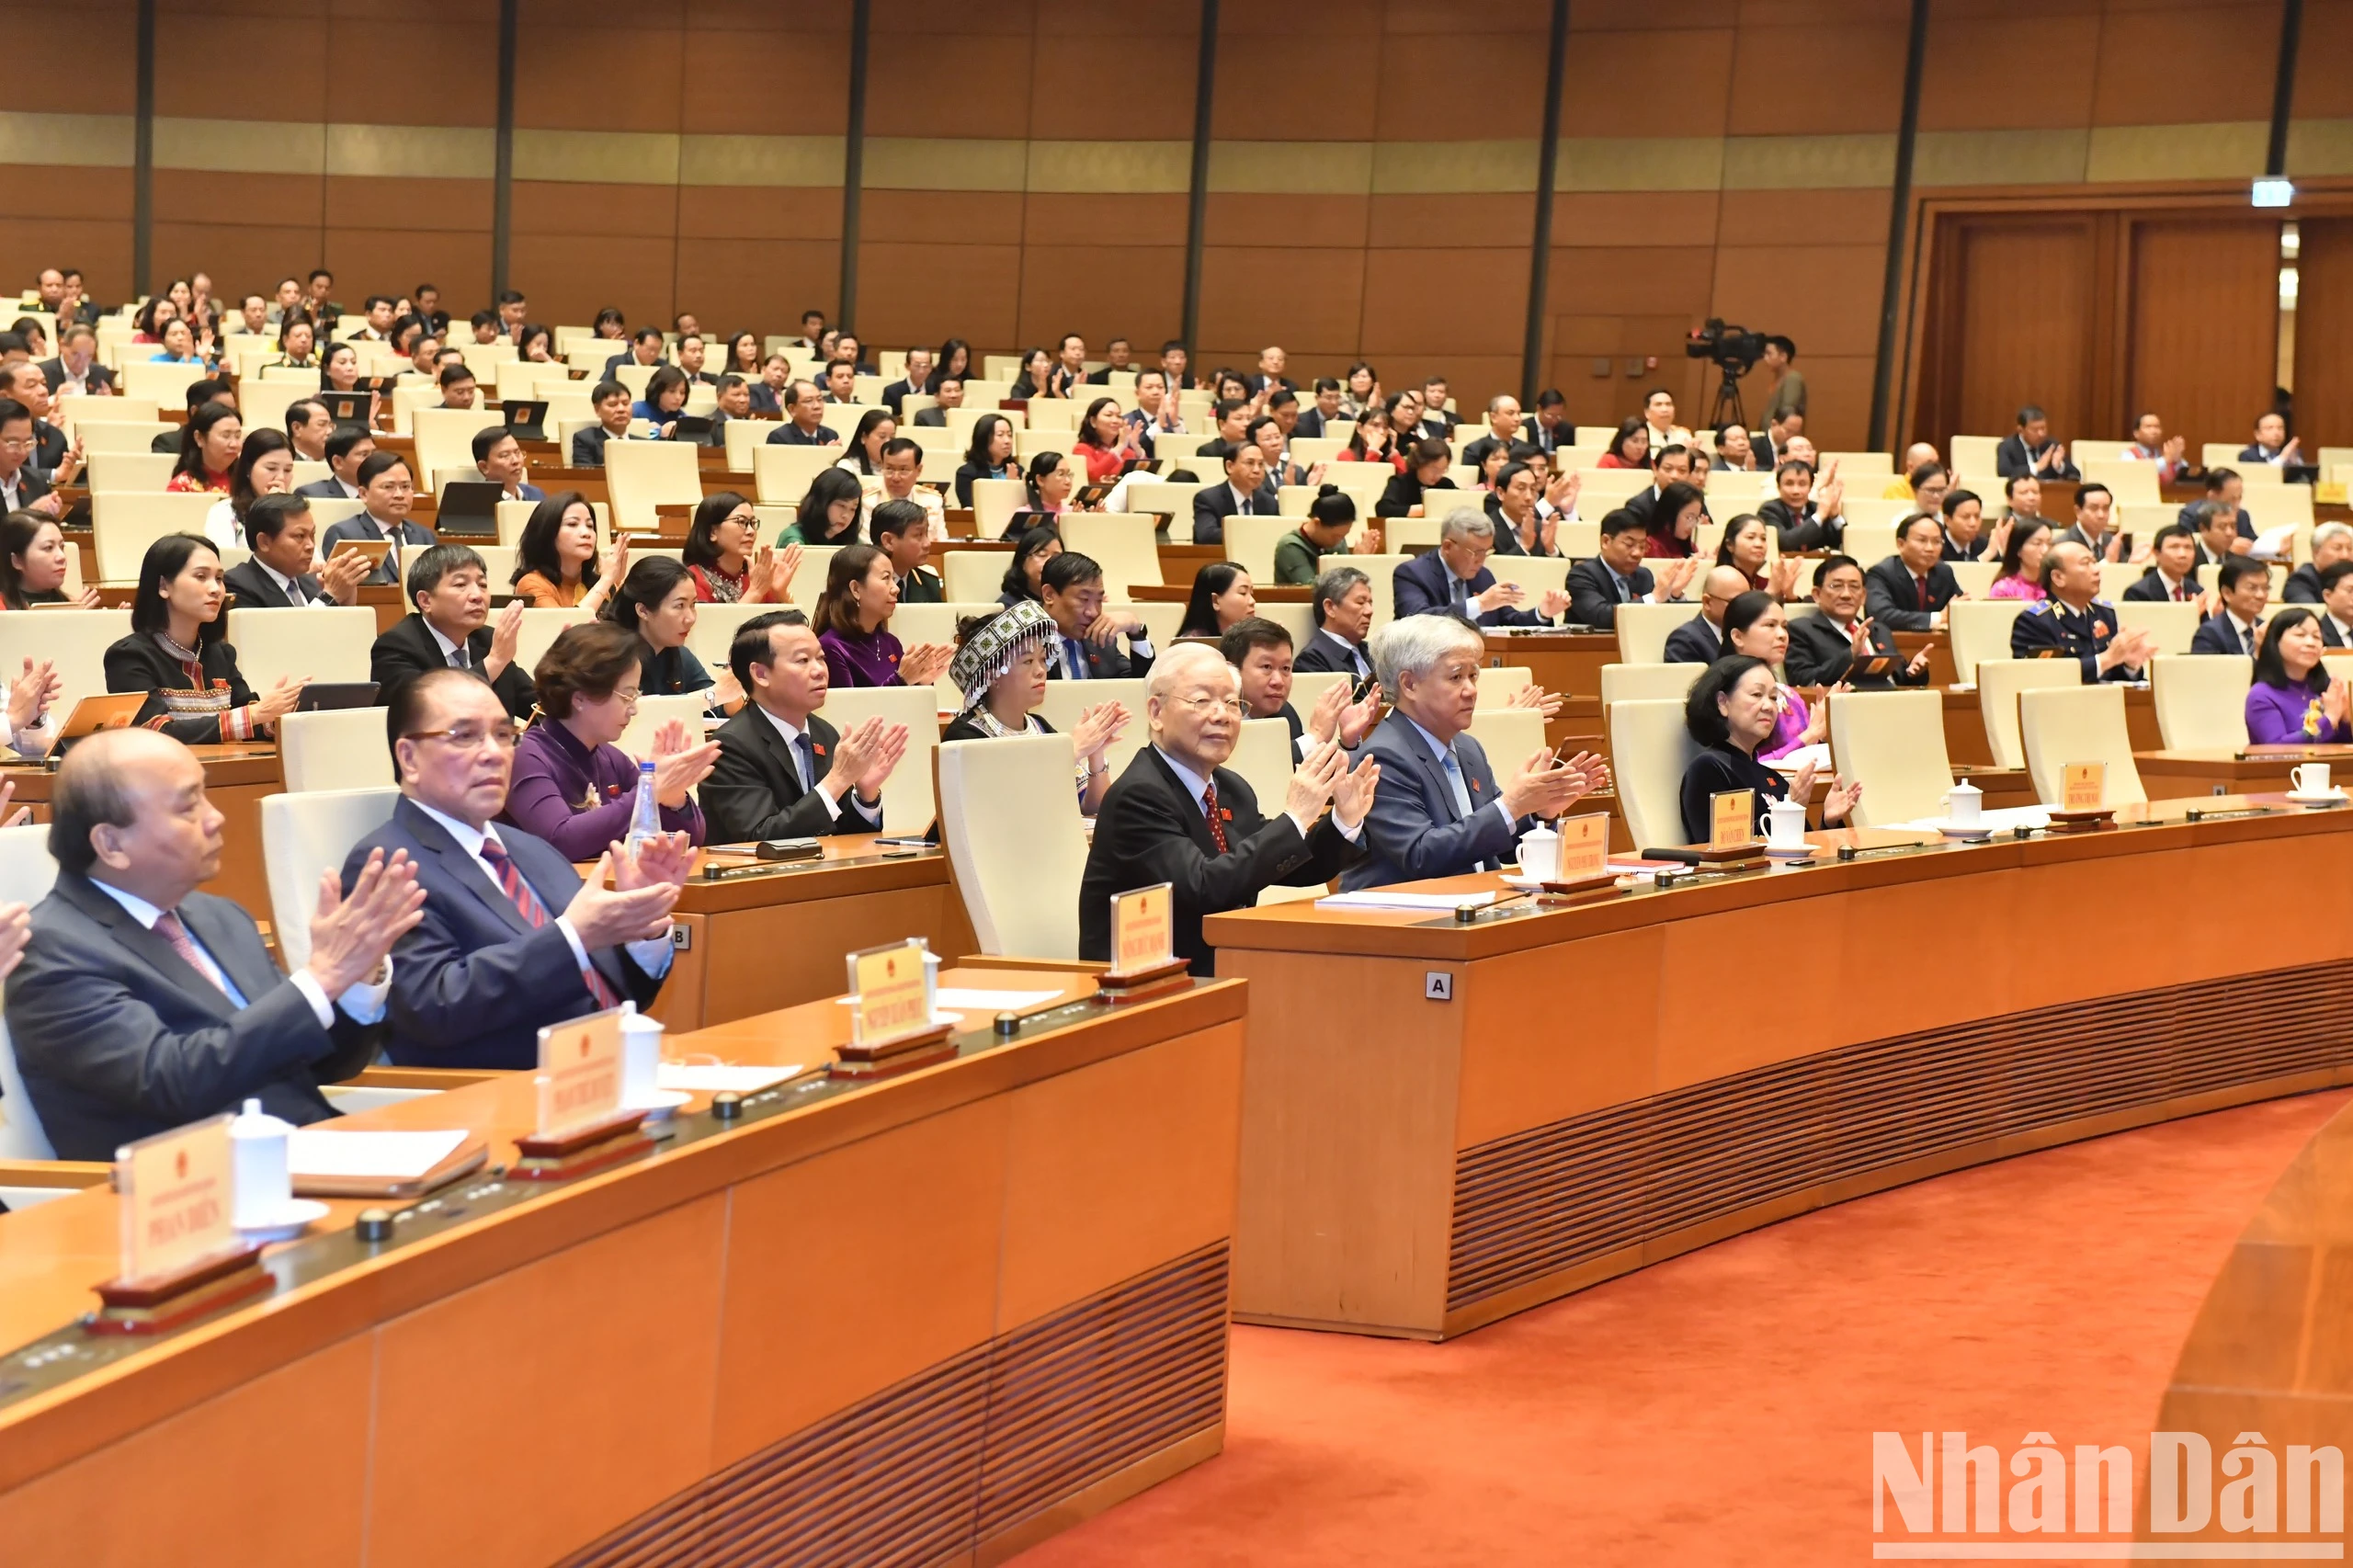 Toàn văn phát biểu bế mạc của Chủ tịch Quốc hội Vương Đình Huệ tại Kỳ họp thứ 6, Quốc hội khóa XV ảnh 1